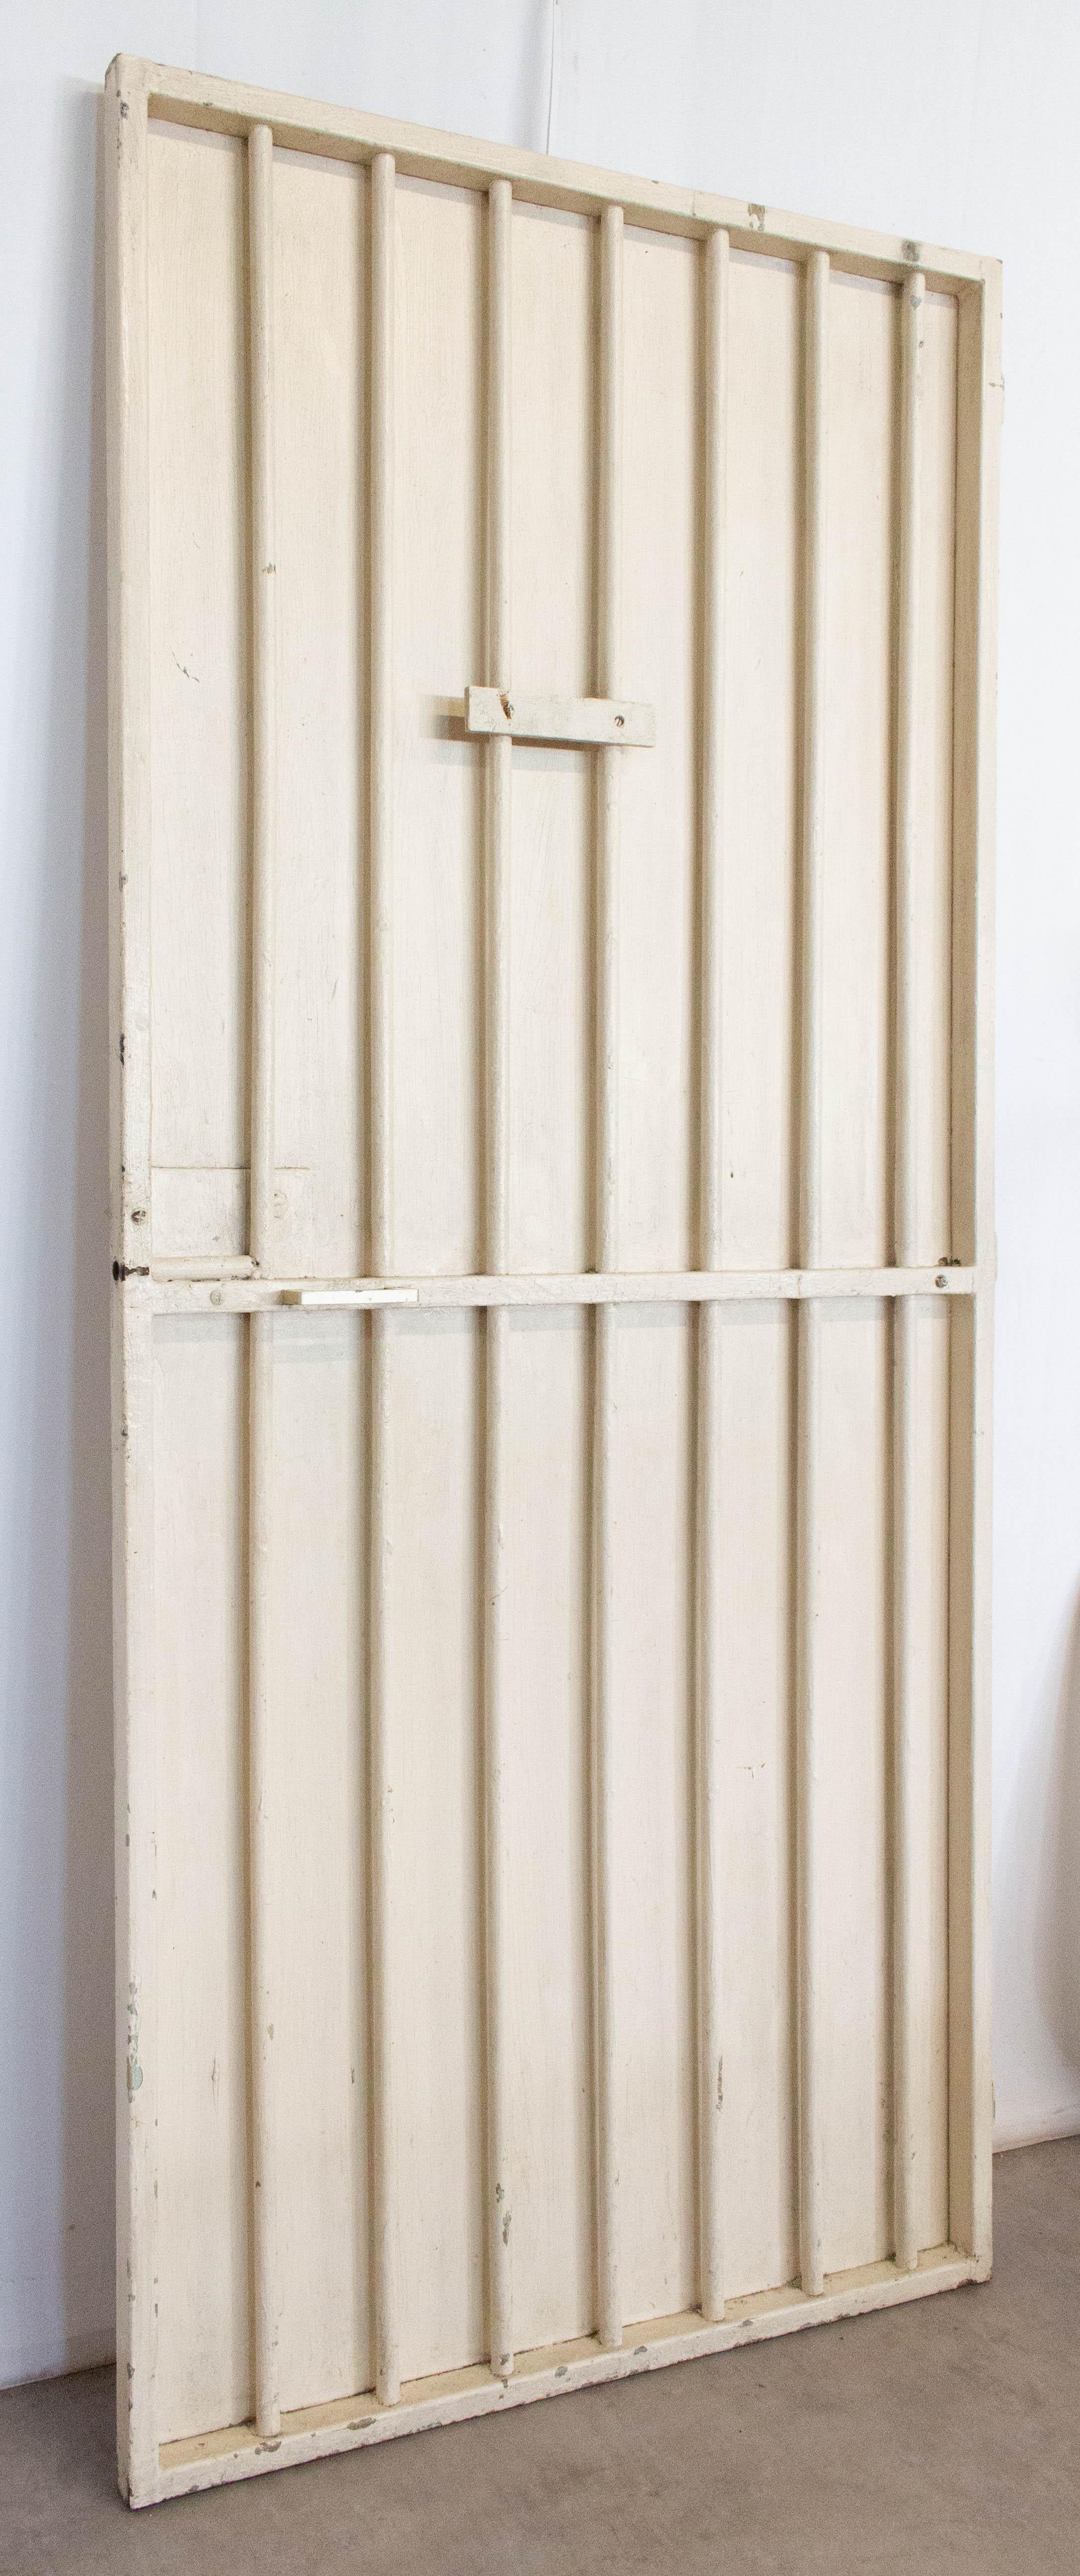 Porte française en acier de style industriel du milieu du siècle dernier
Porte authentique de la prison de Mont de Marsan (Sud de Bordeaux) : porte de la salle des visiteurs
Parfait pour être incorporé dans des projets de conception et de